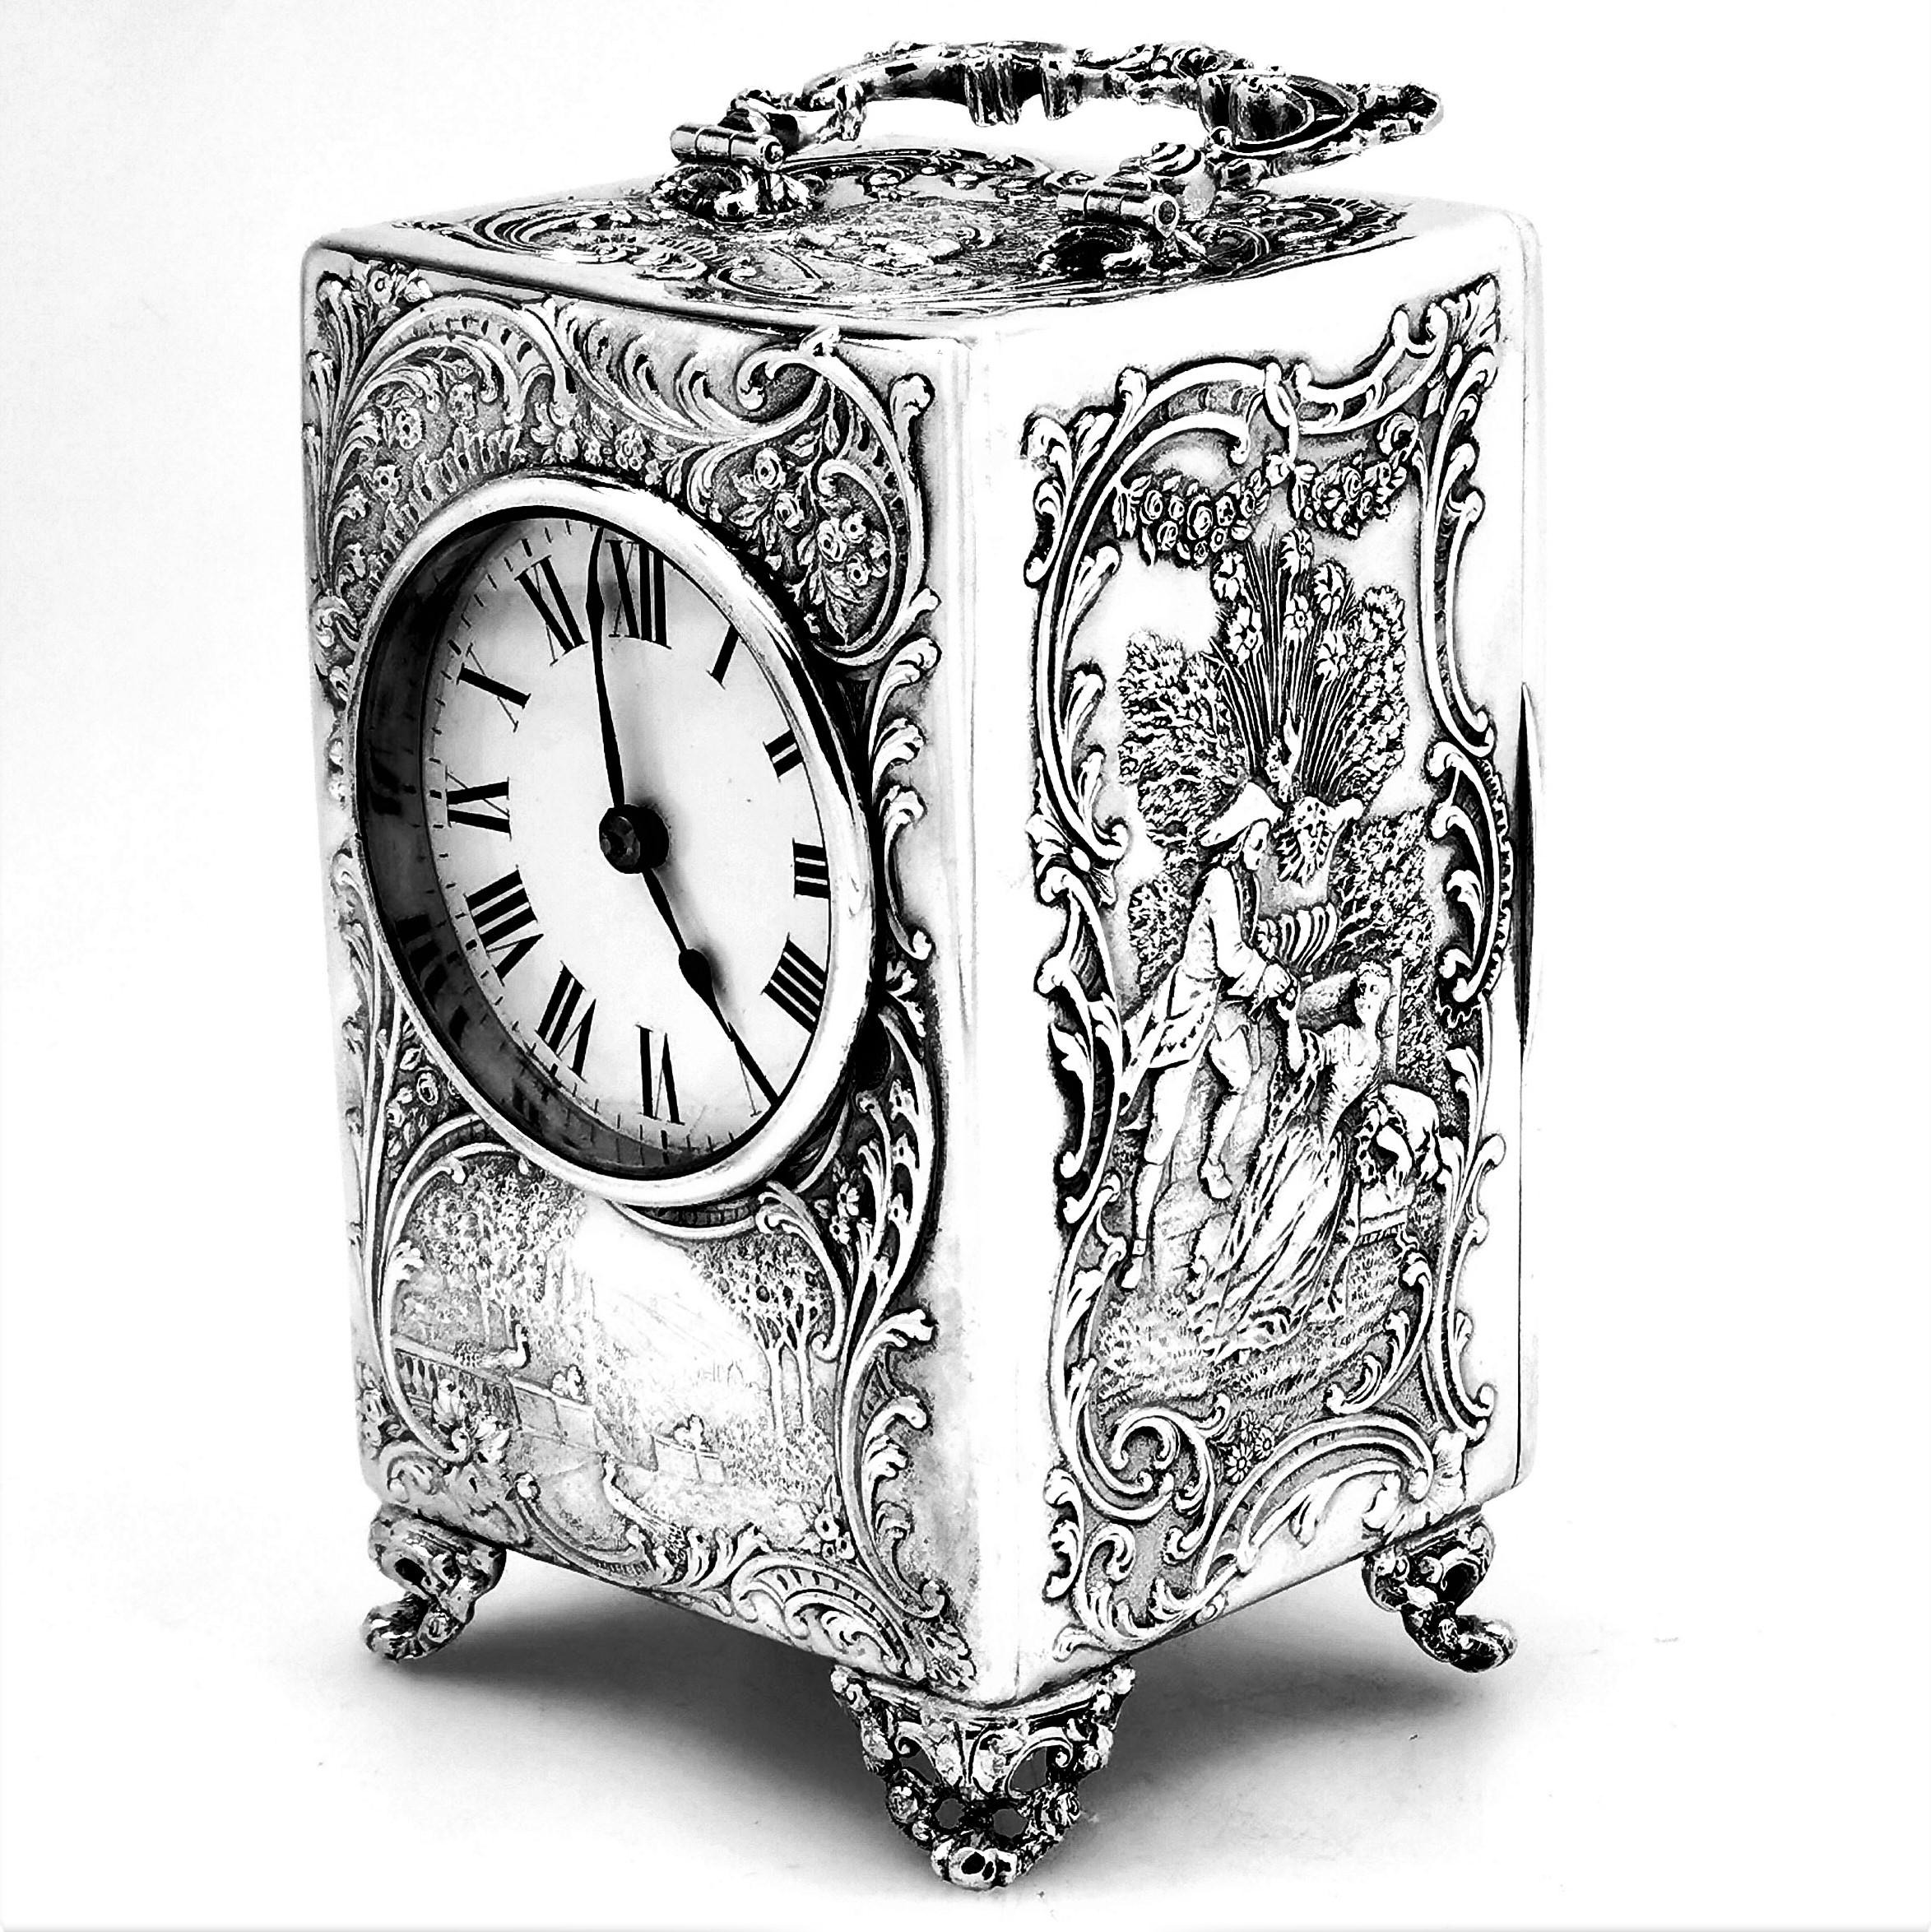 Eine hübsche antike viktorianische Kutschenuhr aus massivem Silber. Diese viktorianische Uhr hat einen elegant ziselierten Korpus, der auf allen vier Seiten und auf der Oberseite zeitgenössische Szenen mit Figuren in einer ländlichen Umgebung zeigt.